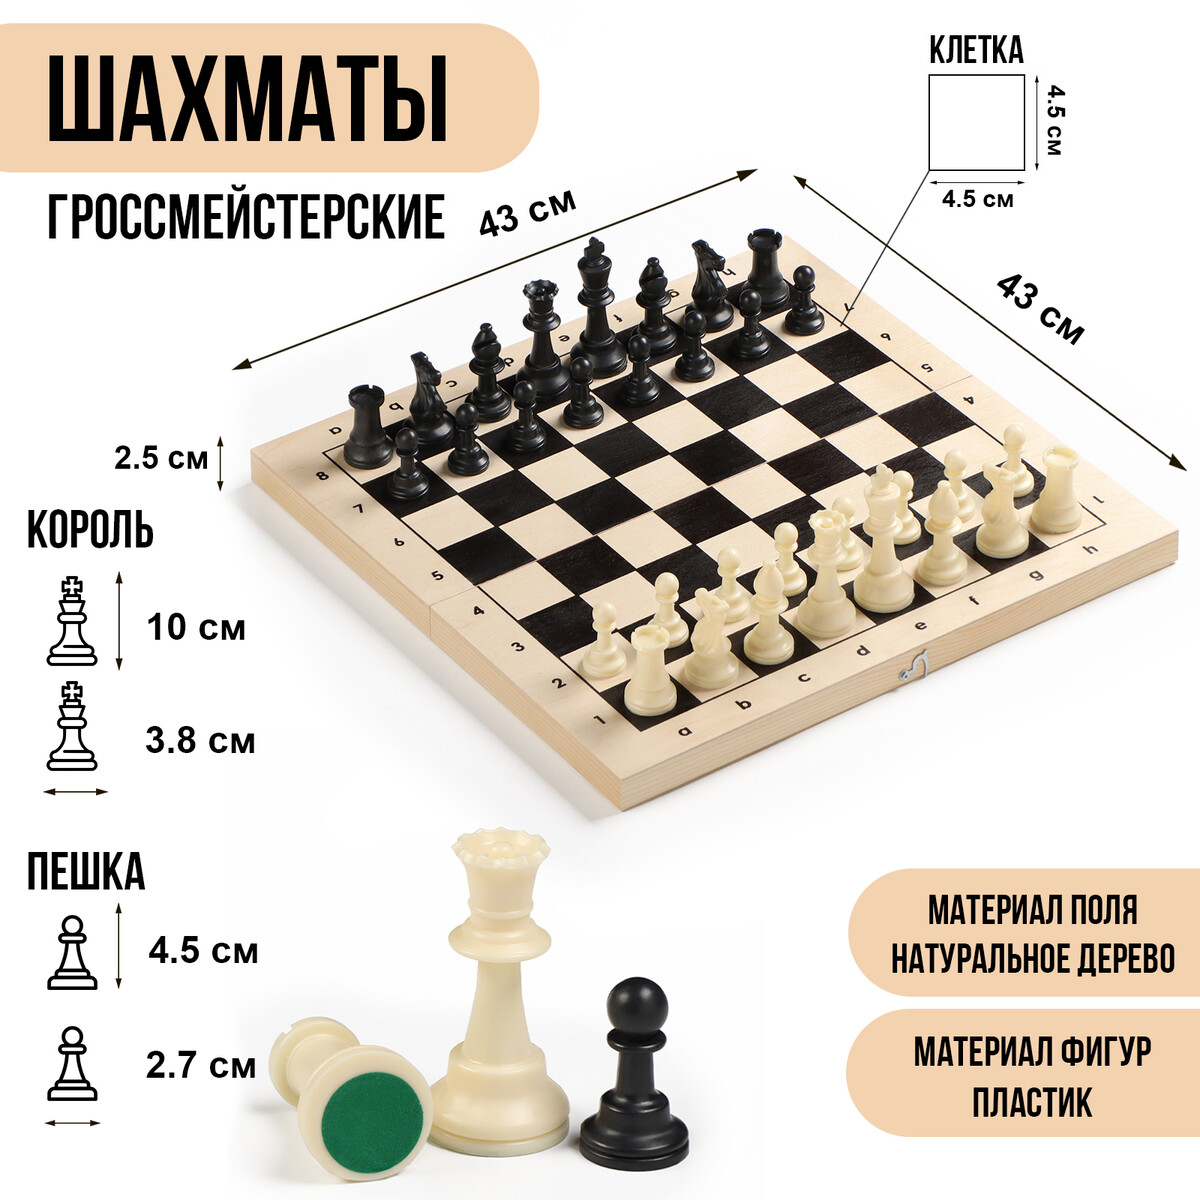 Шахматы гроссмейстерские, турнирные 43х43 см, фигуры пластик, король h-10 см, пешка h=4.5 см настольная игра набор 2 в 1 баталия шашки шахматы доска пластик 20х20см